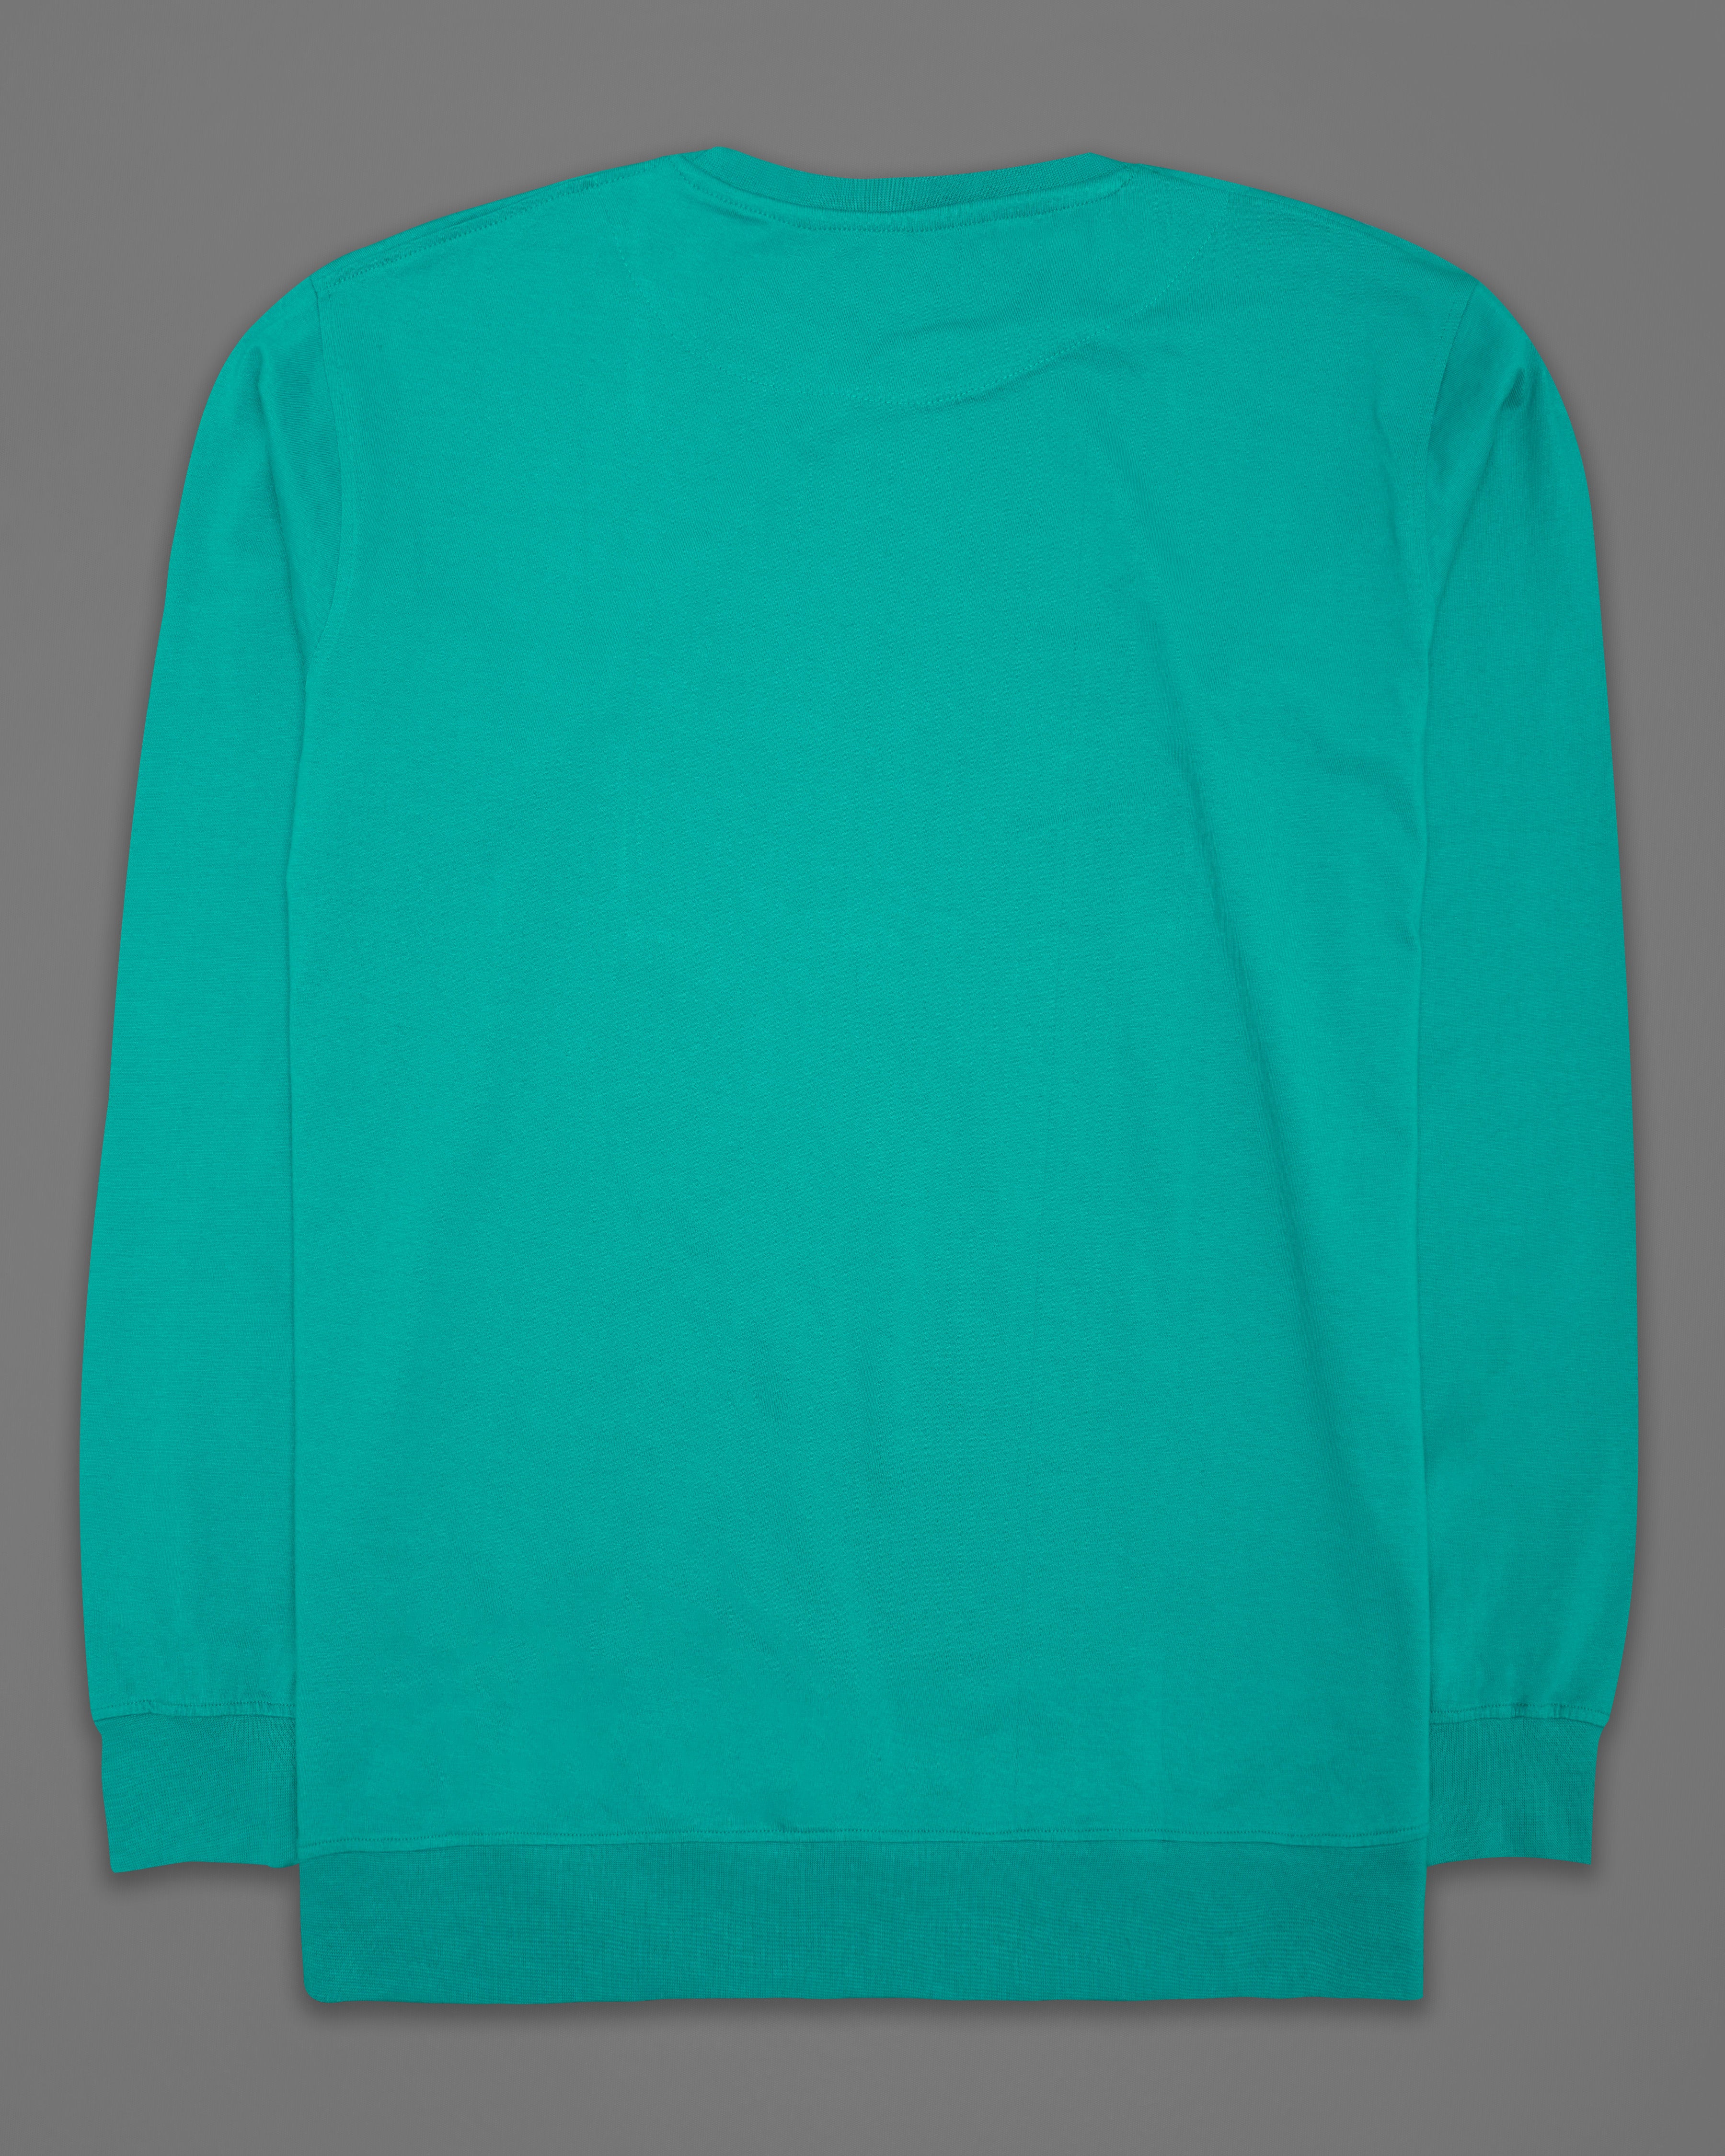 Persian Aqua Green Rubber Printed Super Soft Organic Cotton Sweatshirt TS170-W01-S, TS170-W01-M, TS170-W01-L, TS170-W01-XL, TS170-W01-XXL